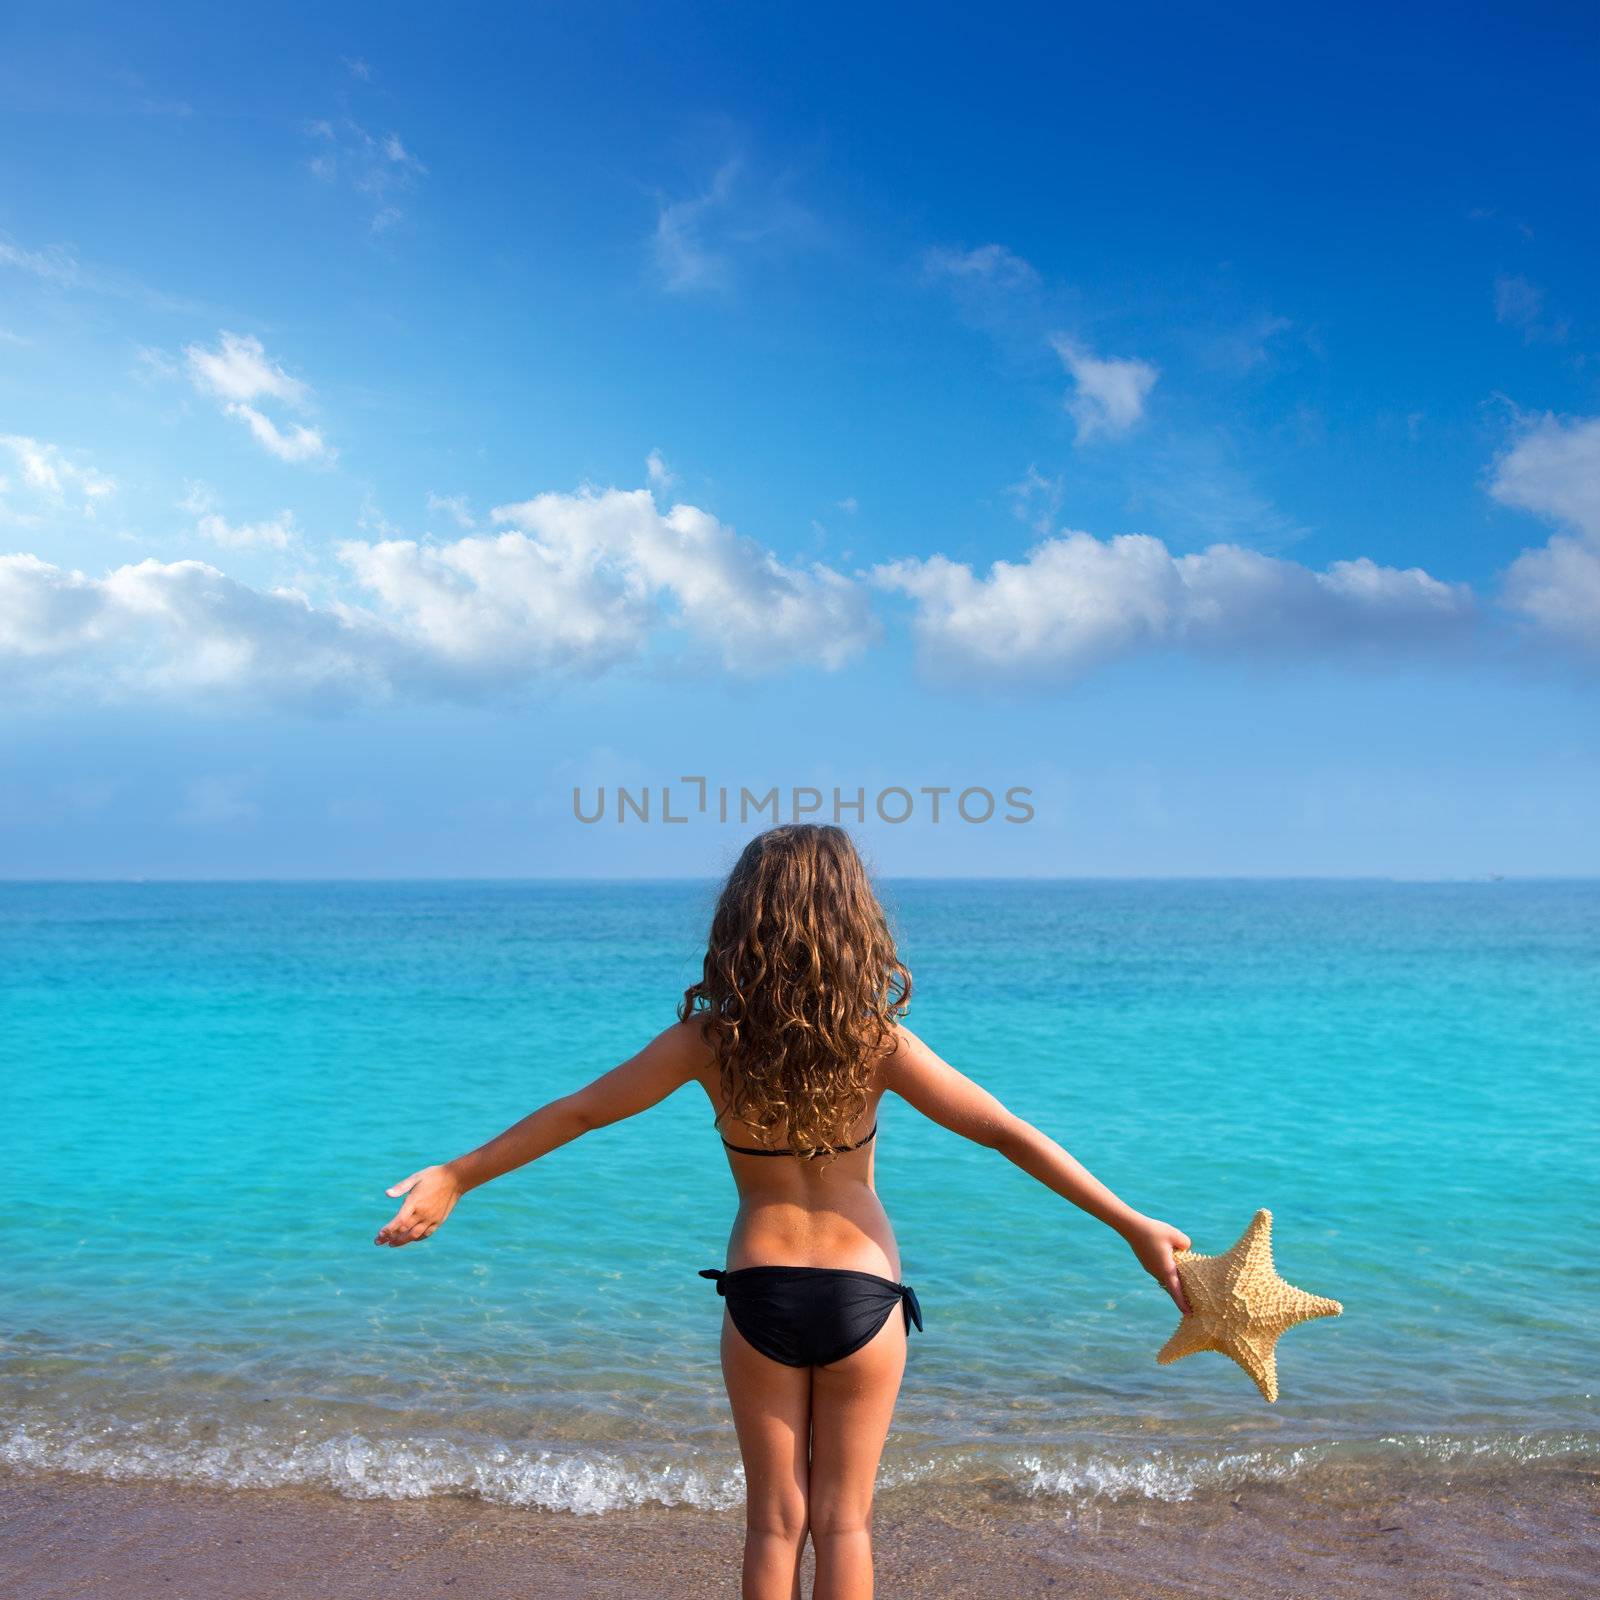 blue beach kid girl with bikini holding starfish looking sea in rear view